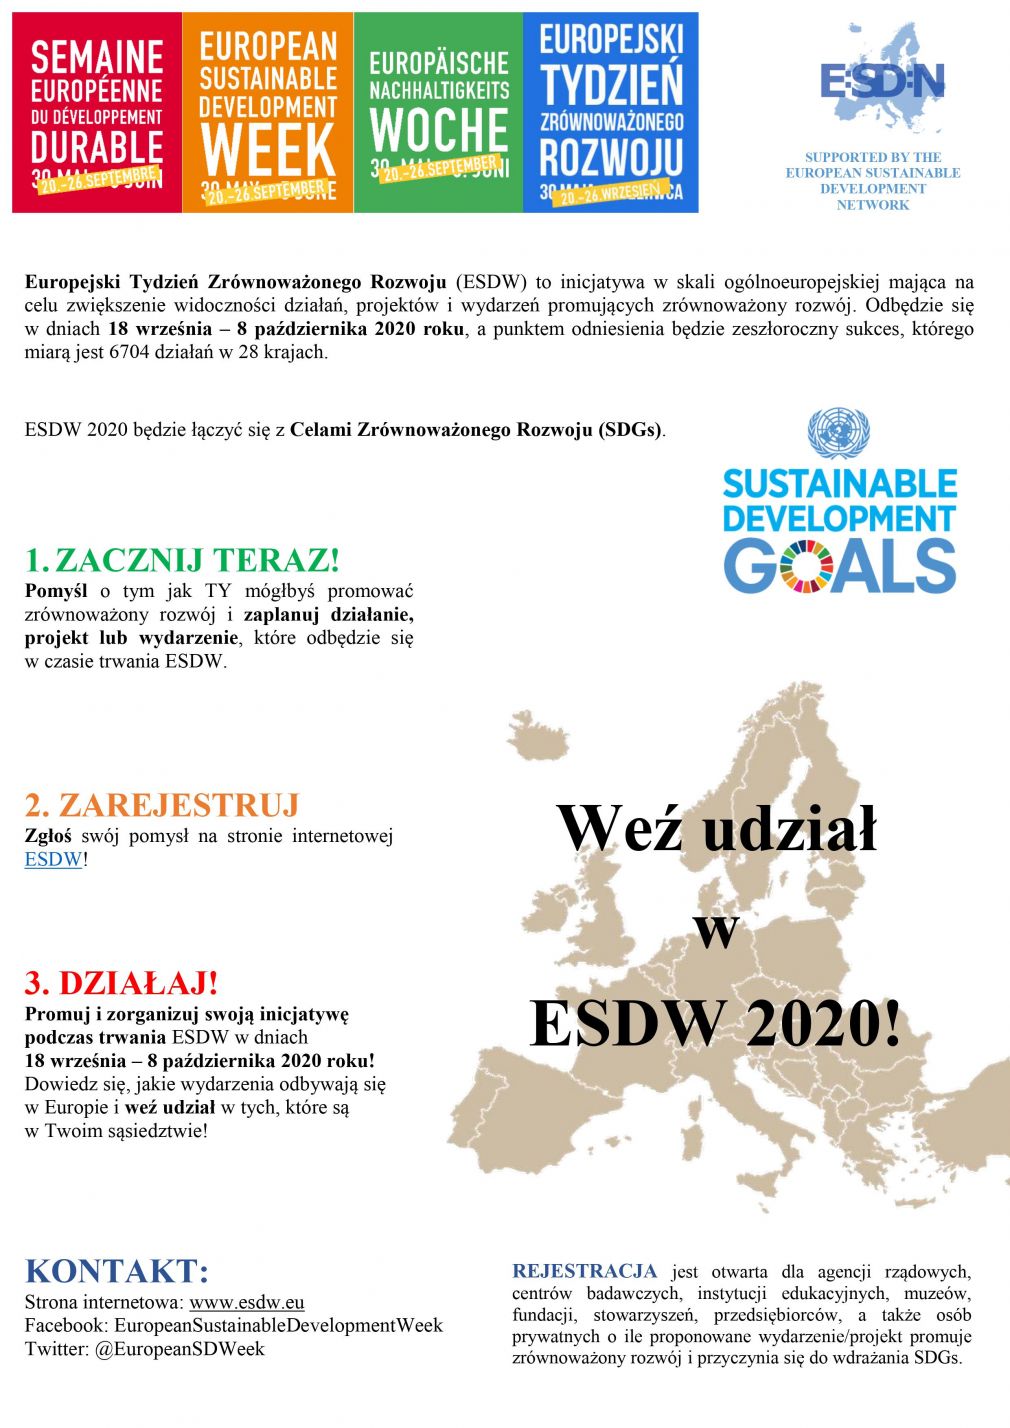 Zaproszenie na Europejski Tydzień Zrównoważonego Rozwoju